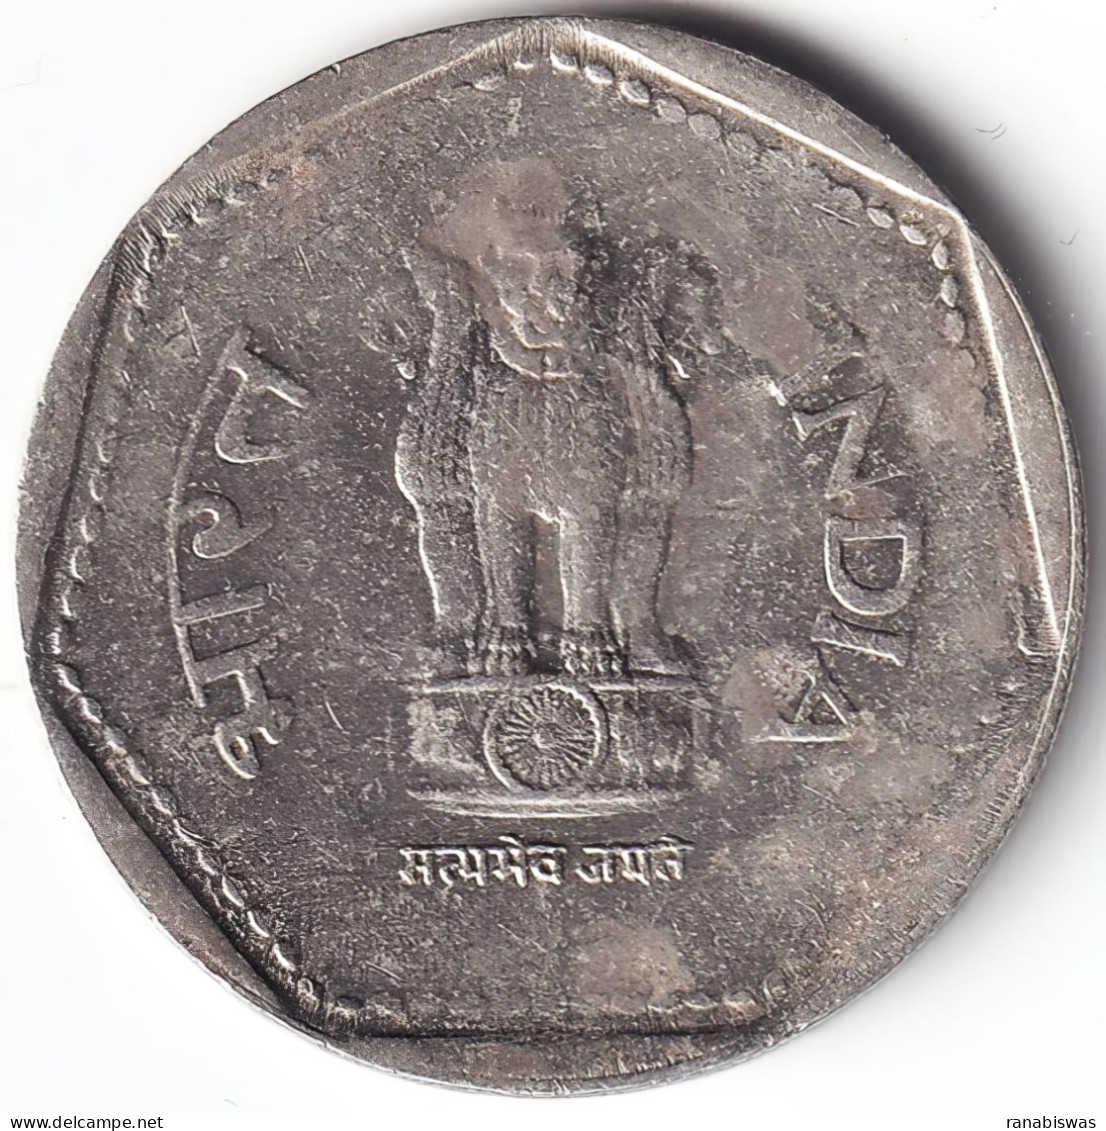 INDIA COIN LOT 107, 1 RUPEE 1989, CALCUTTA MINT, XF - Inde